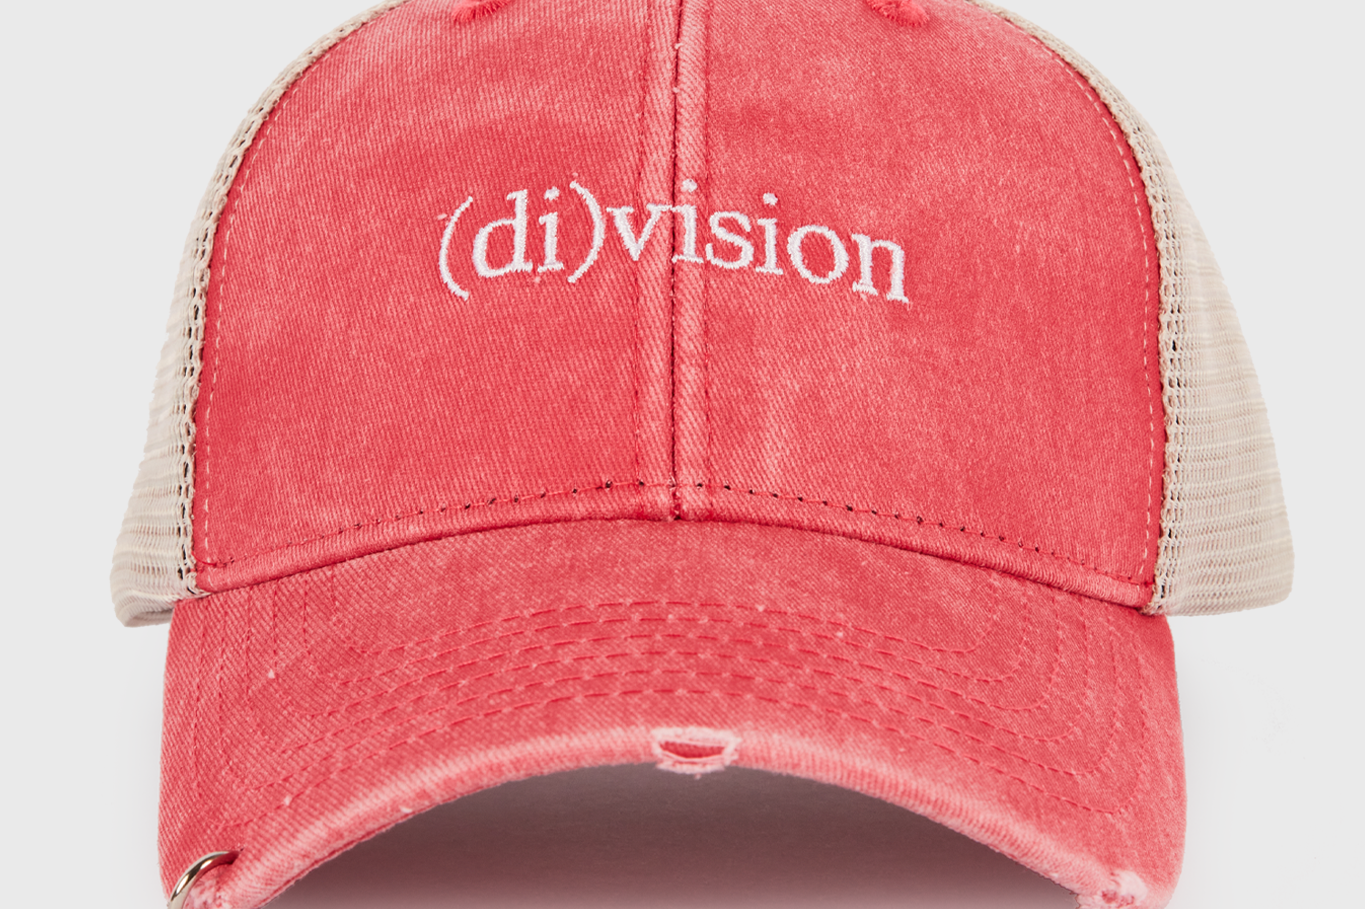 (di)vision logo cap washed red - (di)vision